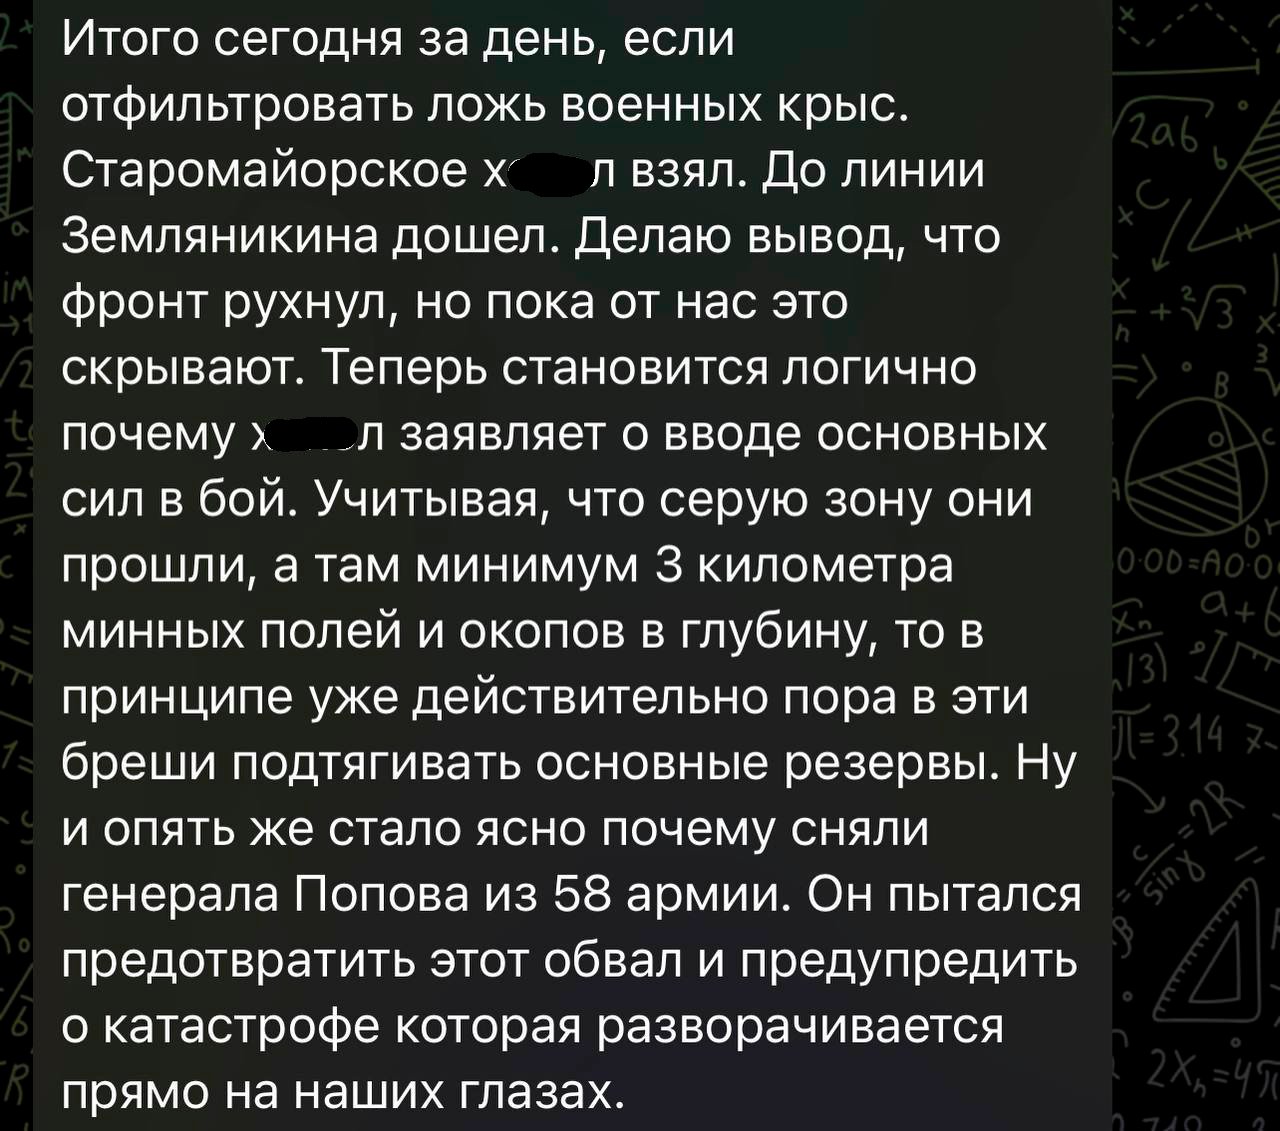 ​"Фронт рухнул, но пока это скрывают", - Z-паблики о "катастрофе" ВС РФ на Донбассе